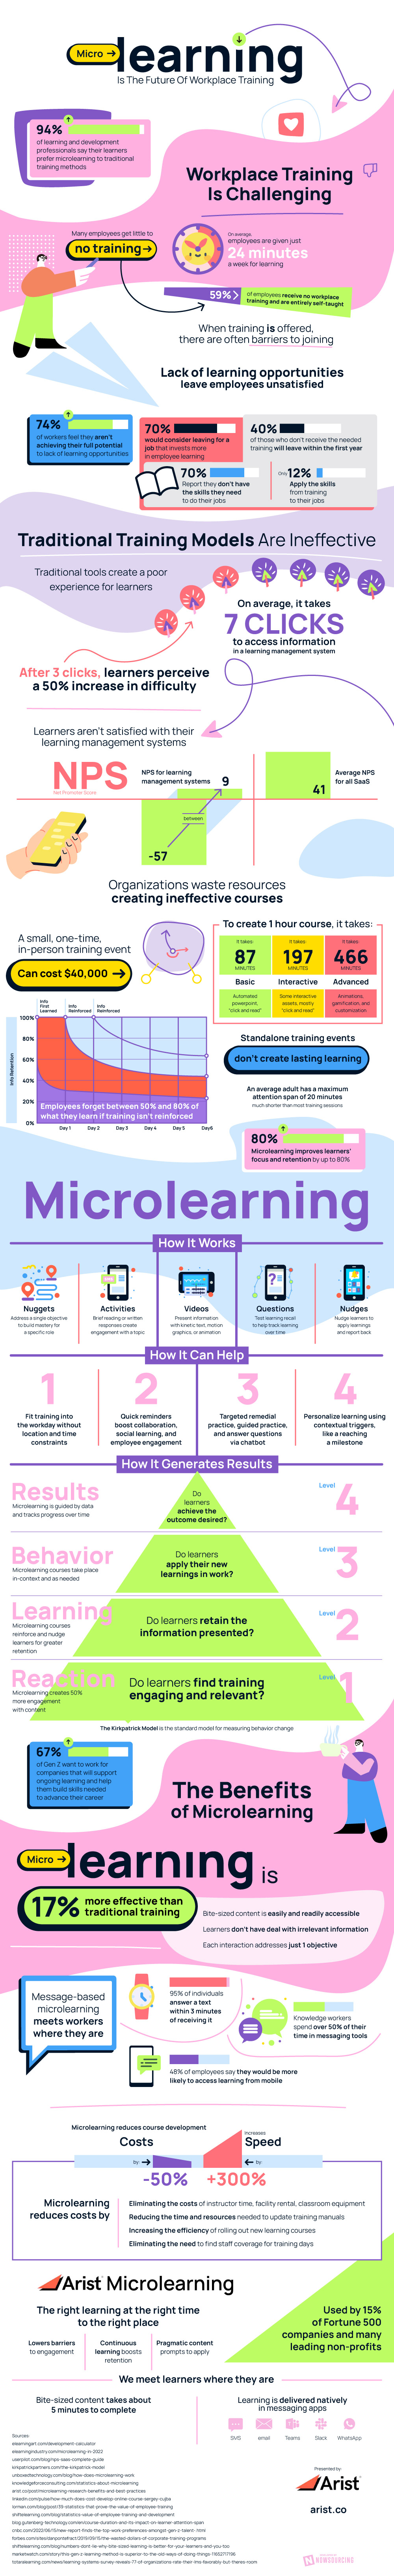 Microlearning: il futuro della formazione sul posto di lavoro